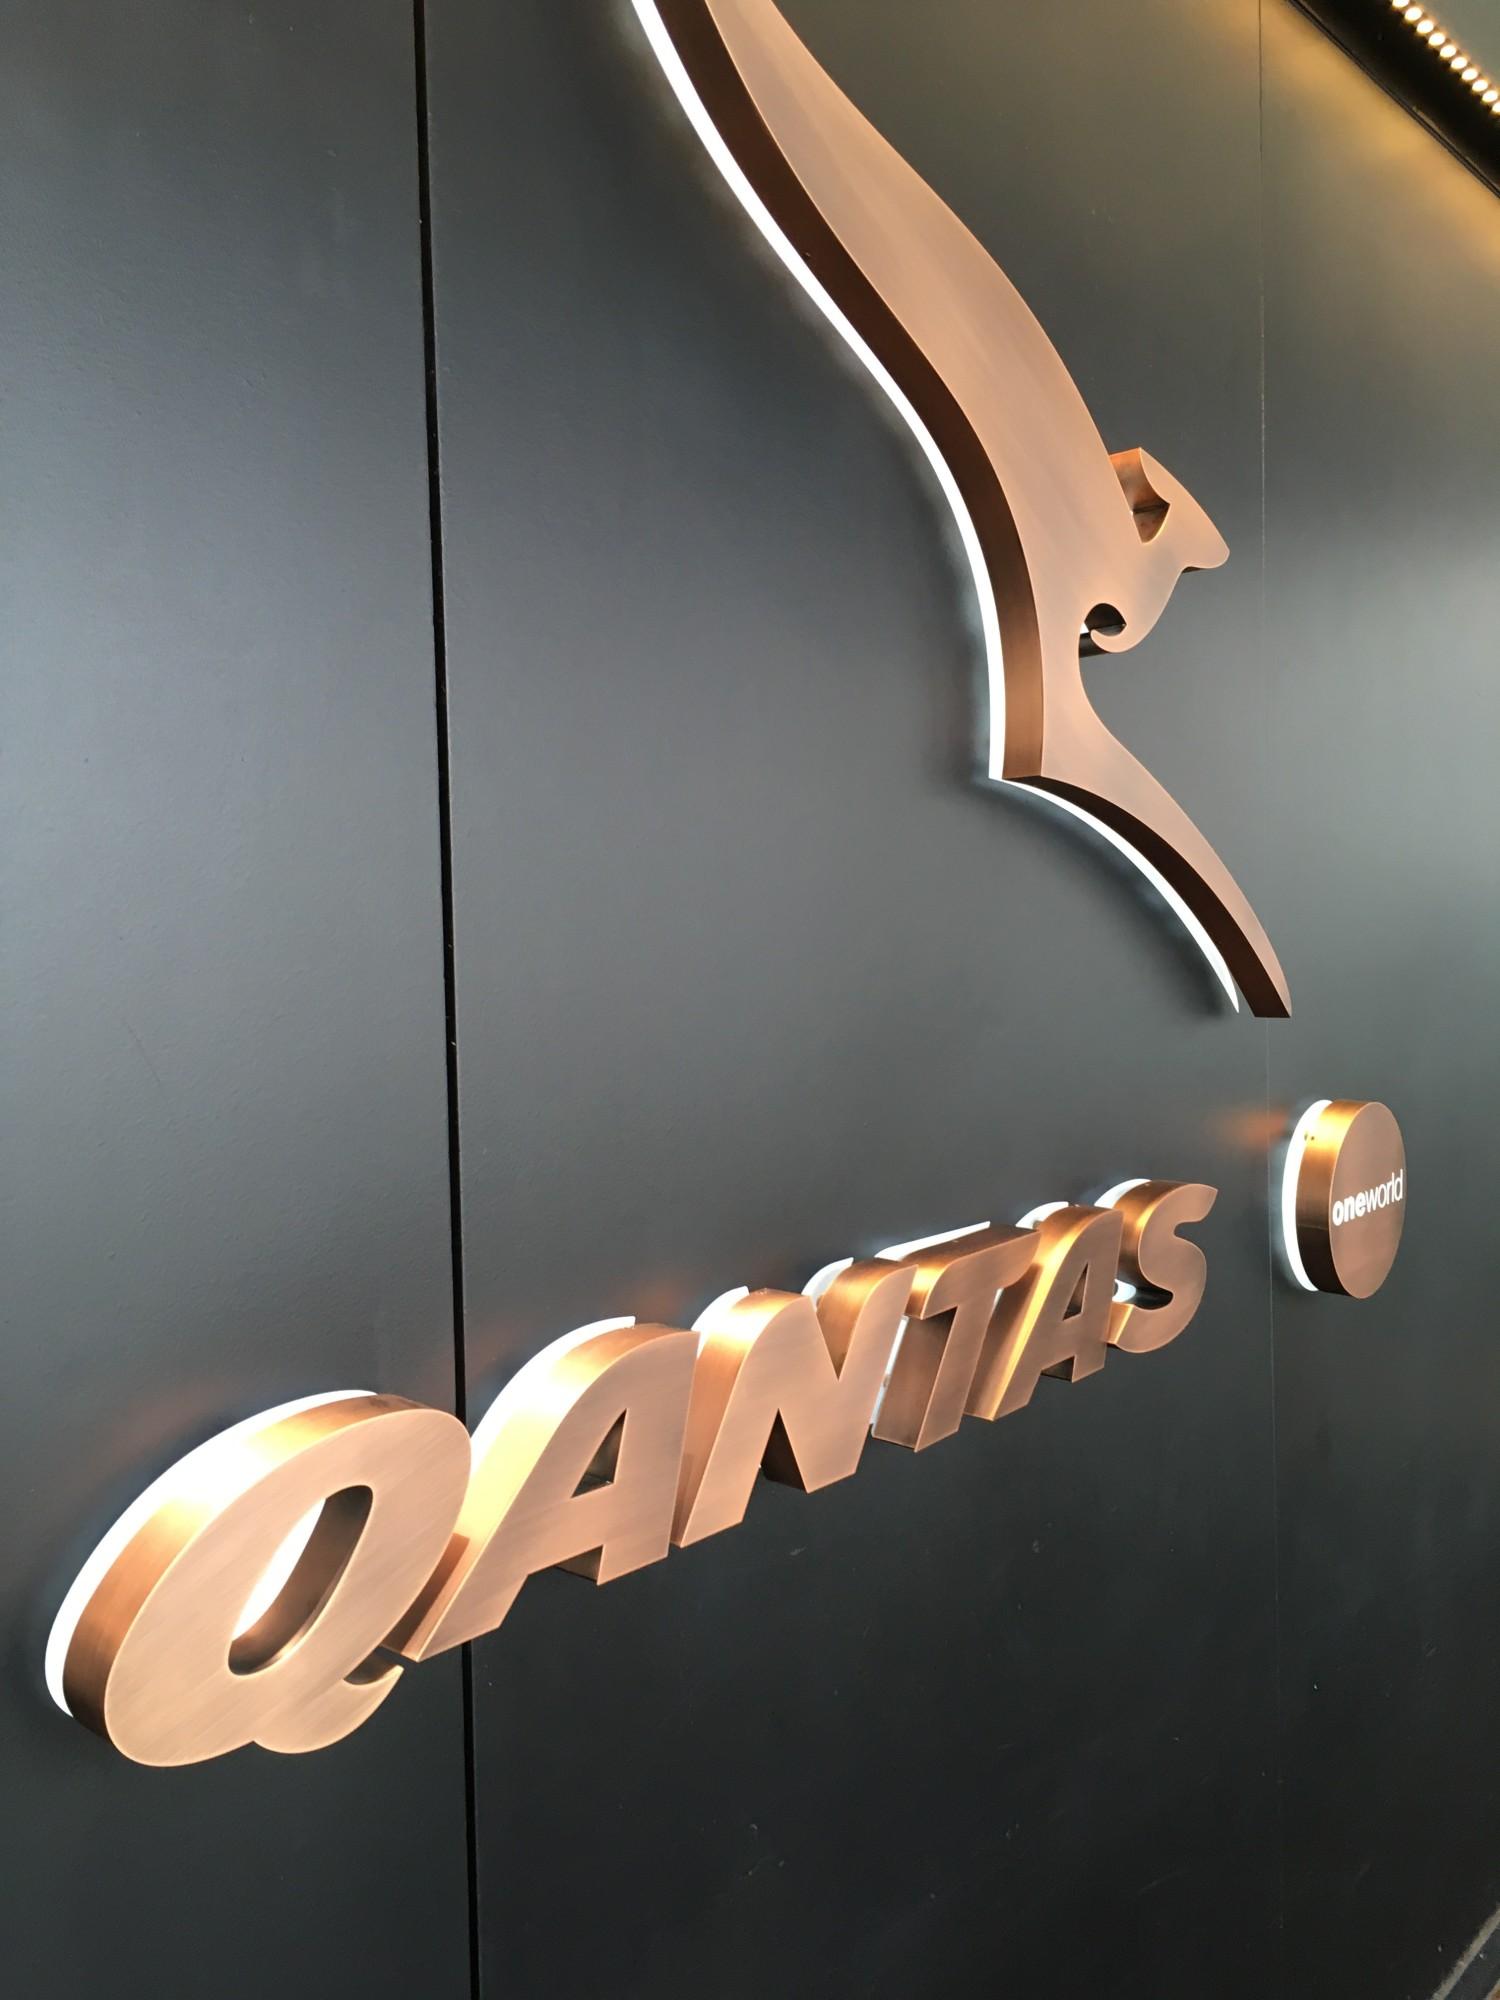 The Qantas Hong Kong Lounge image 87 of 99